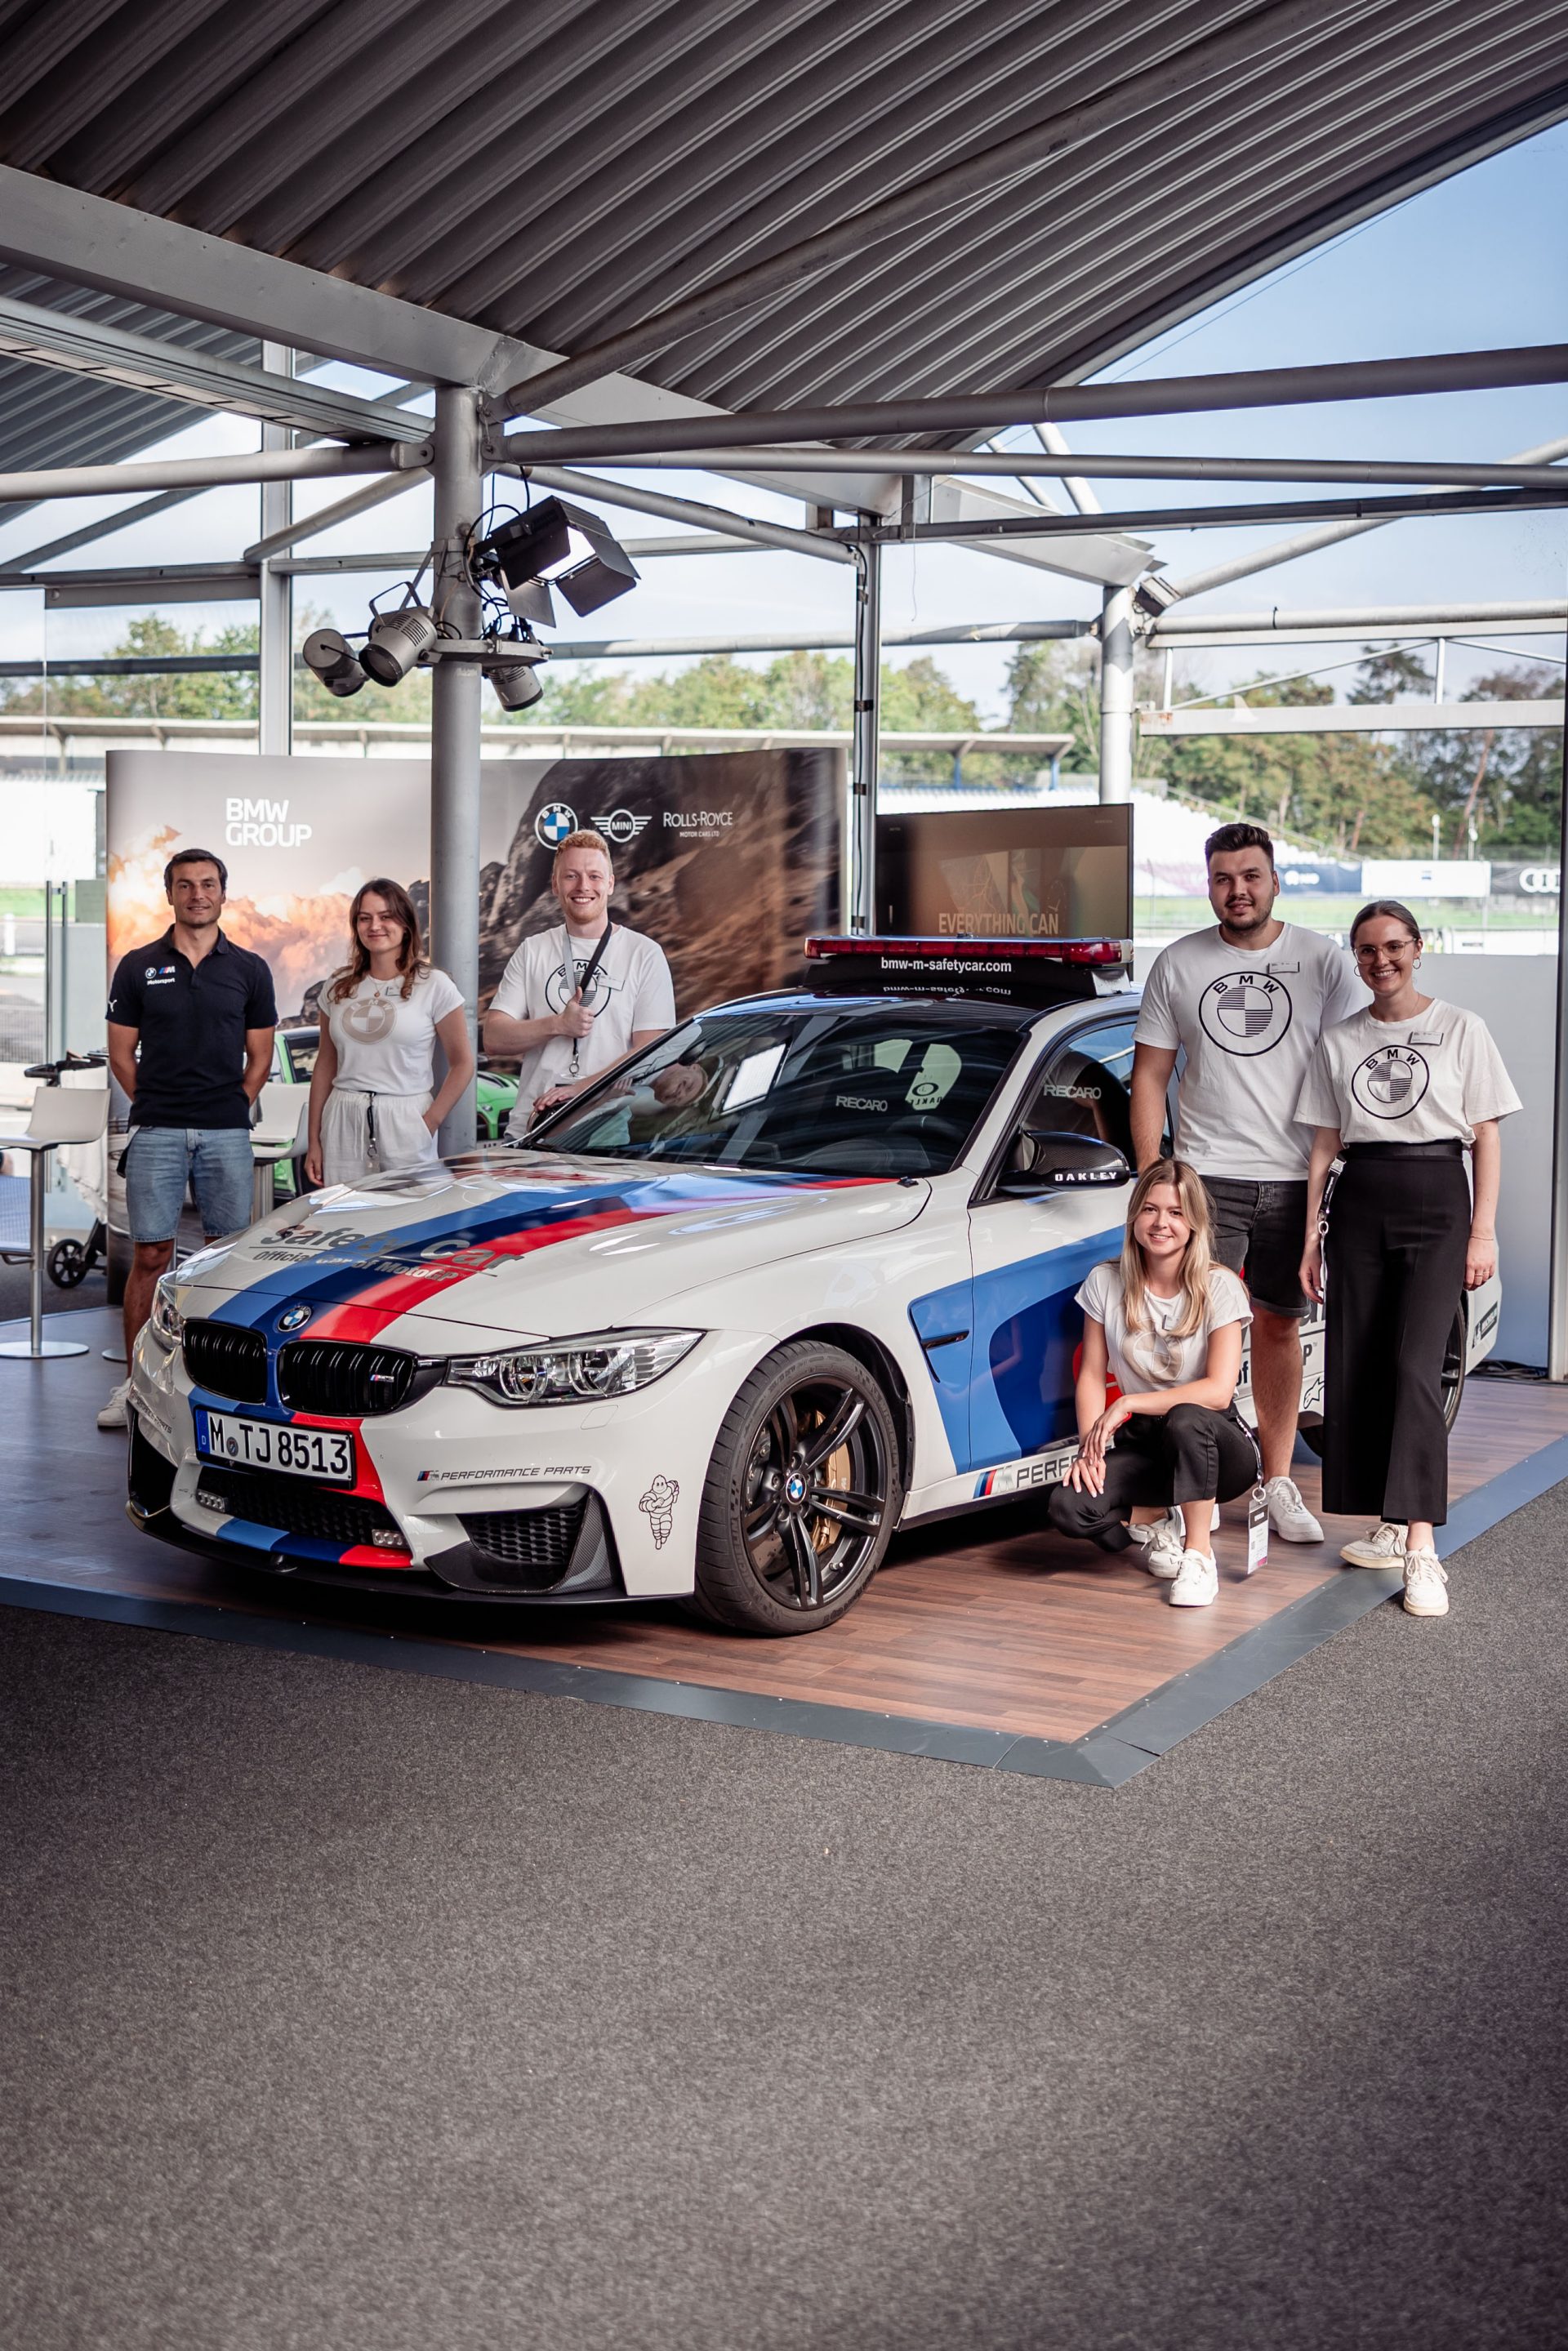 BMW Group team